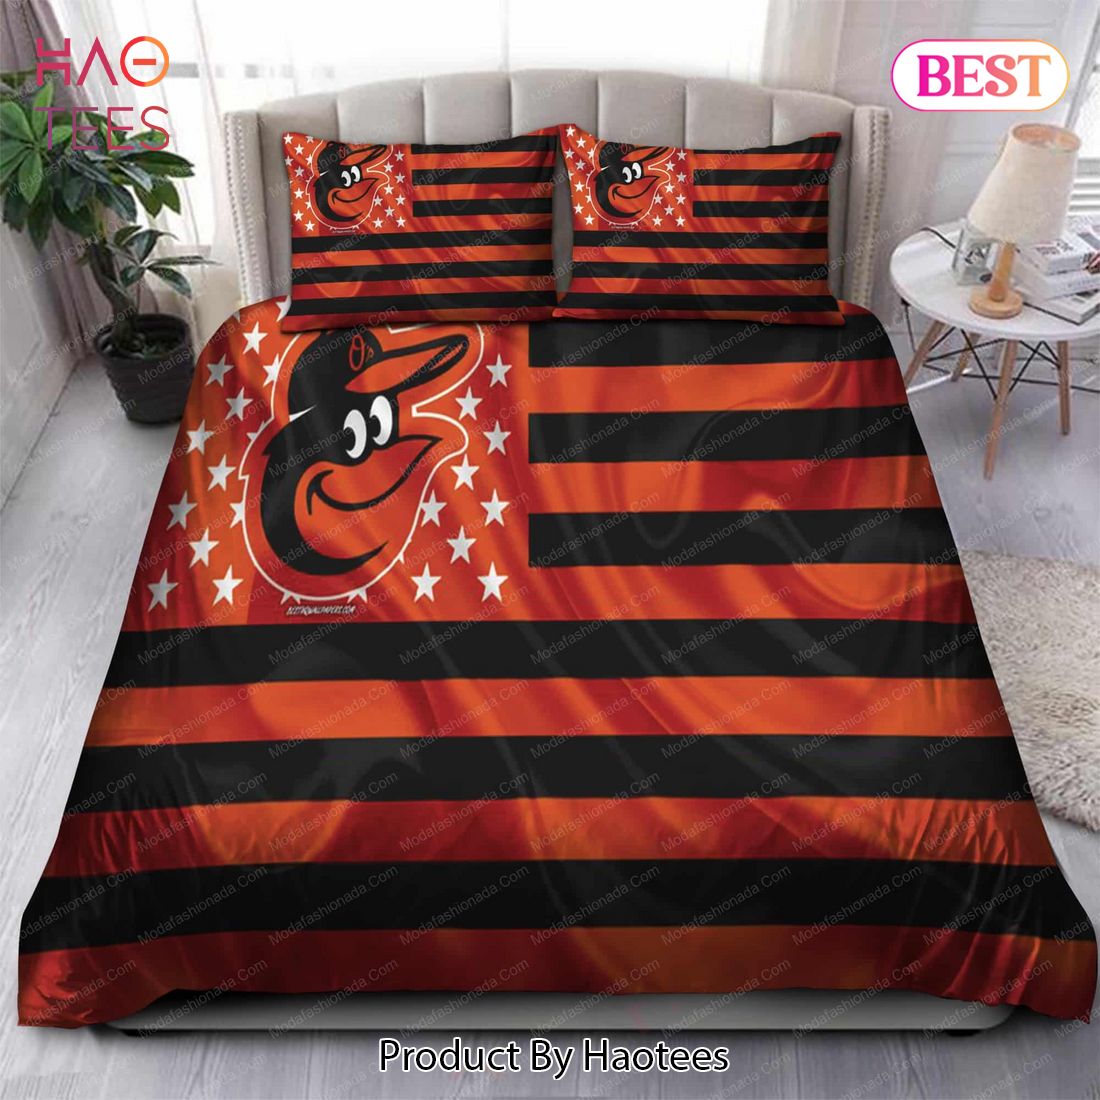 Buy Art Baltimore Orioles MLB 59 Bedding Sets Bed Sets, Bedroom Sets, Comforter Sets, Duvet Cover, Bedspread